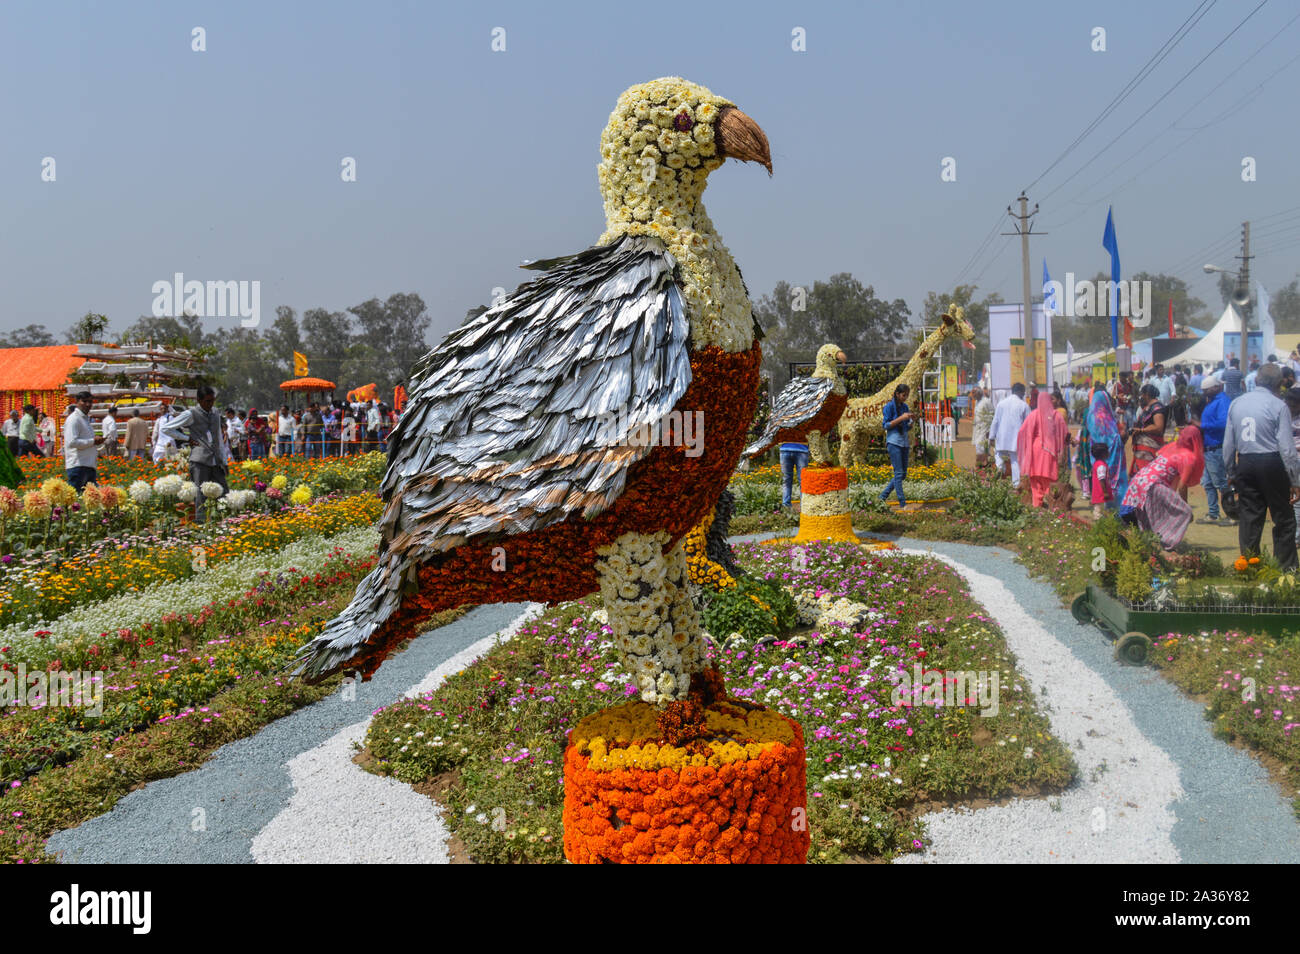 Der Adler, der von Baumwolle und Nachrichten Papier, Blumen gibt es für die Ausstellung in der Pusa, Landwirtschaft Festival, New Delhi. Stockfoto